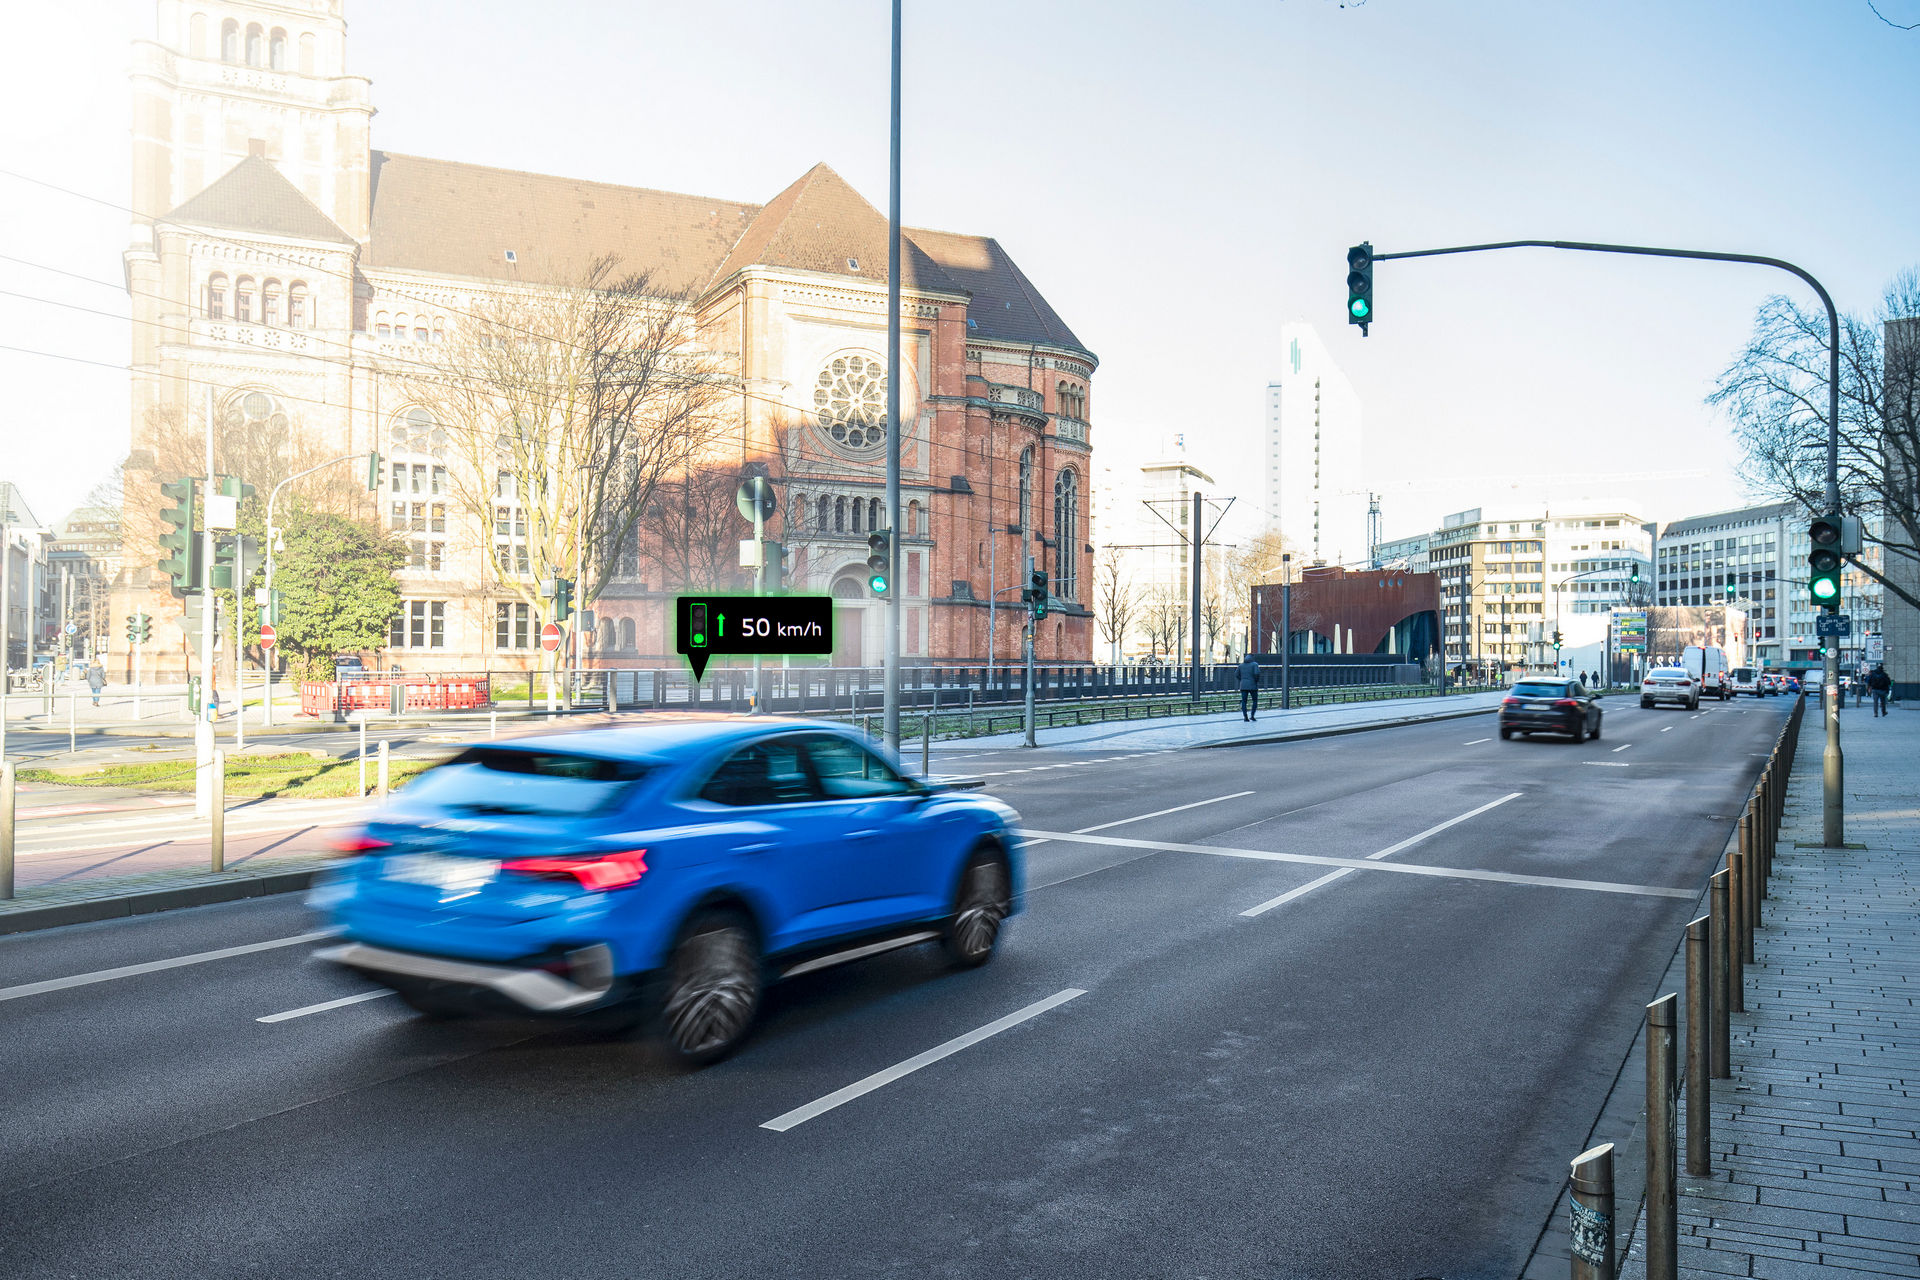 سيارات اودي تبدأ بالتواصل مع إشارات المرور في ألمانيا! 27